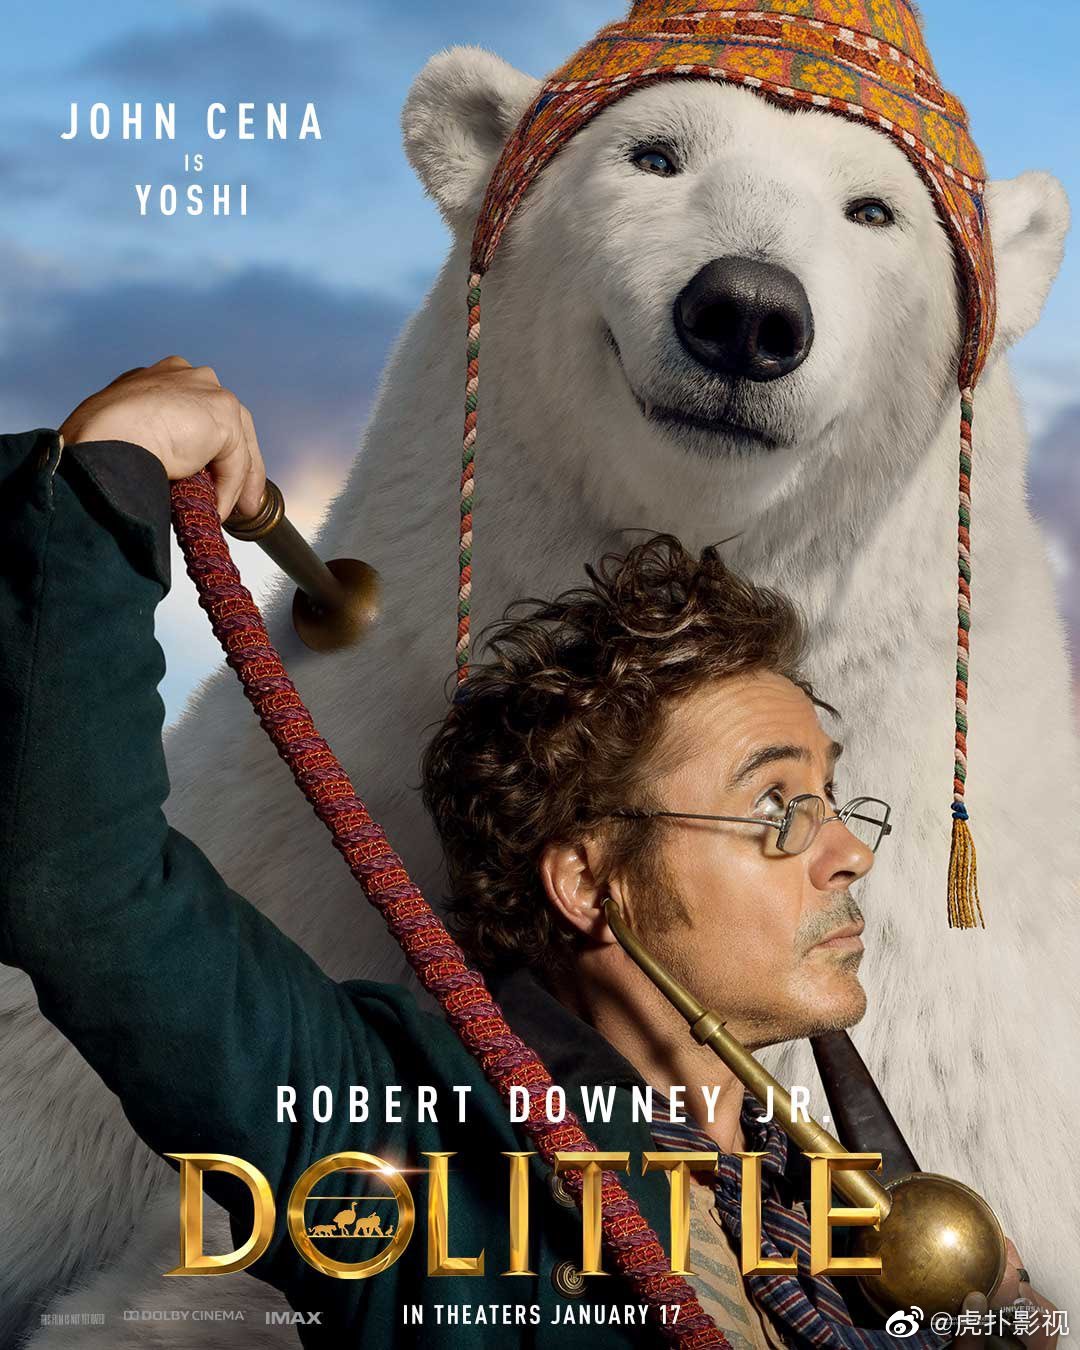 小罗伯特唐尼主演电影多力特的奇幻冒险发布配音动物角色海报